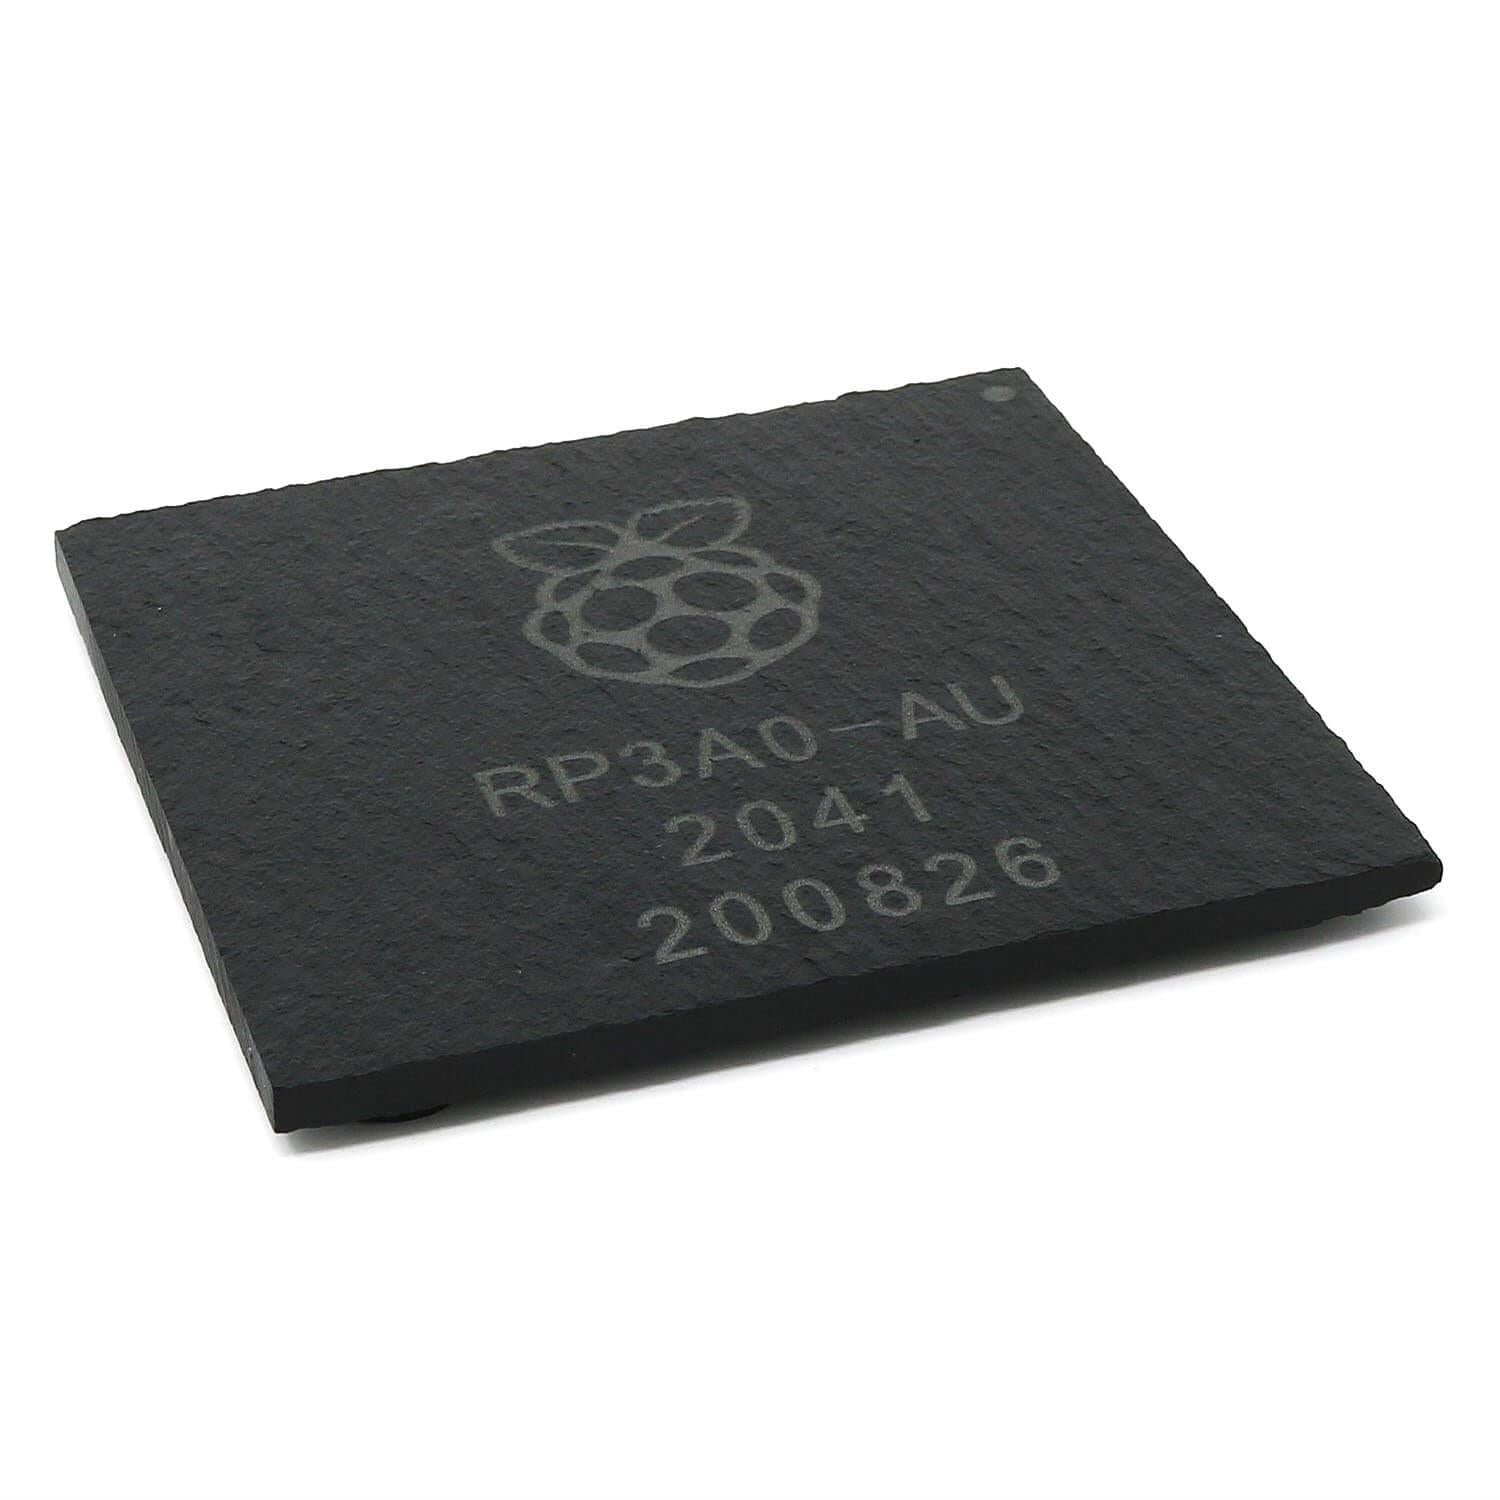 Slate Chip Coaster - RP3A0 - The Pi Hut